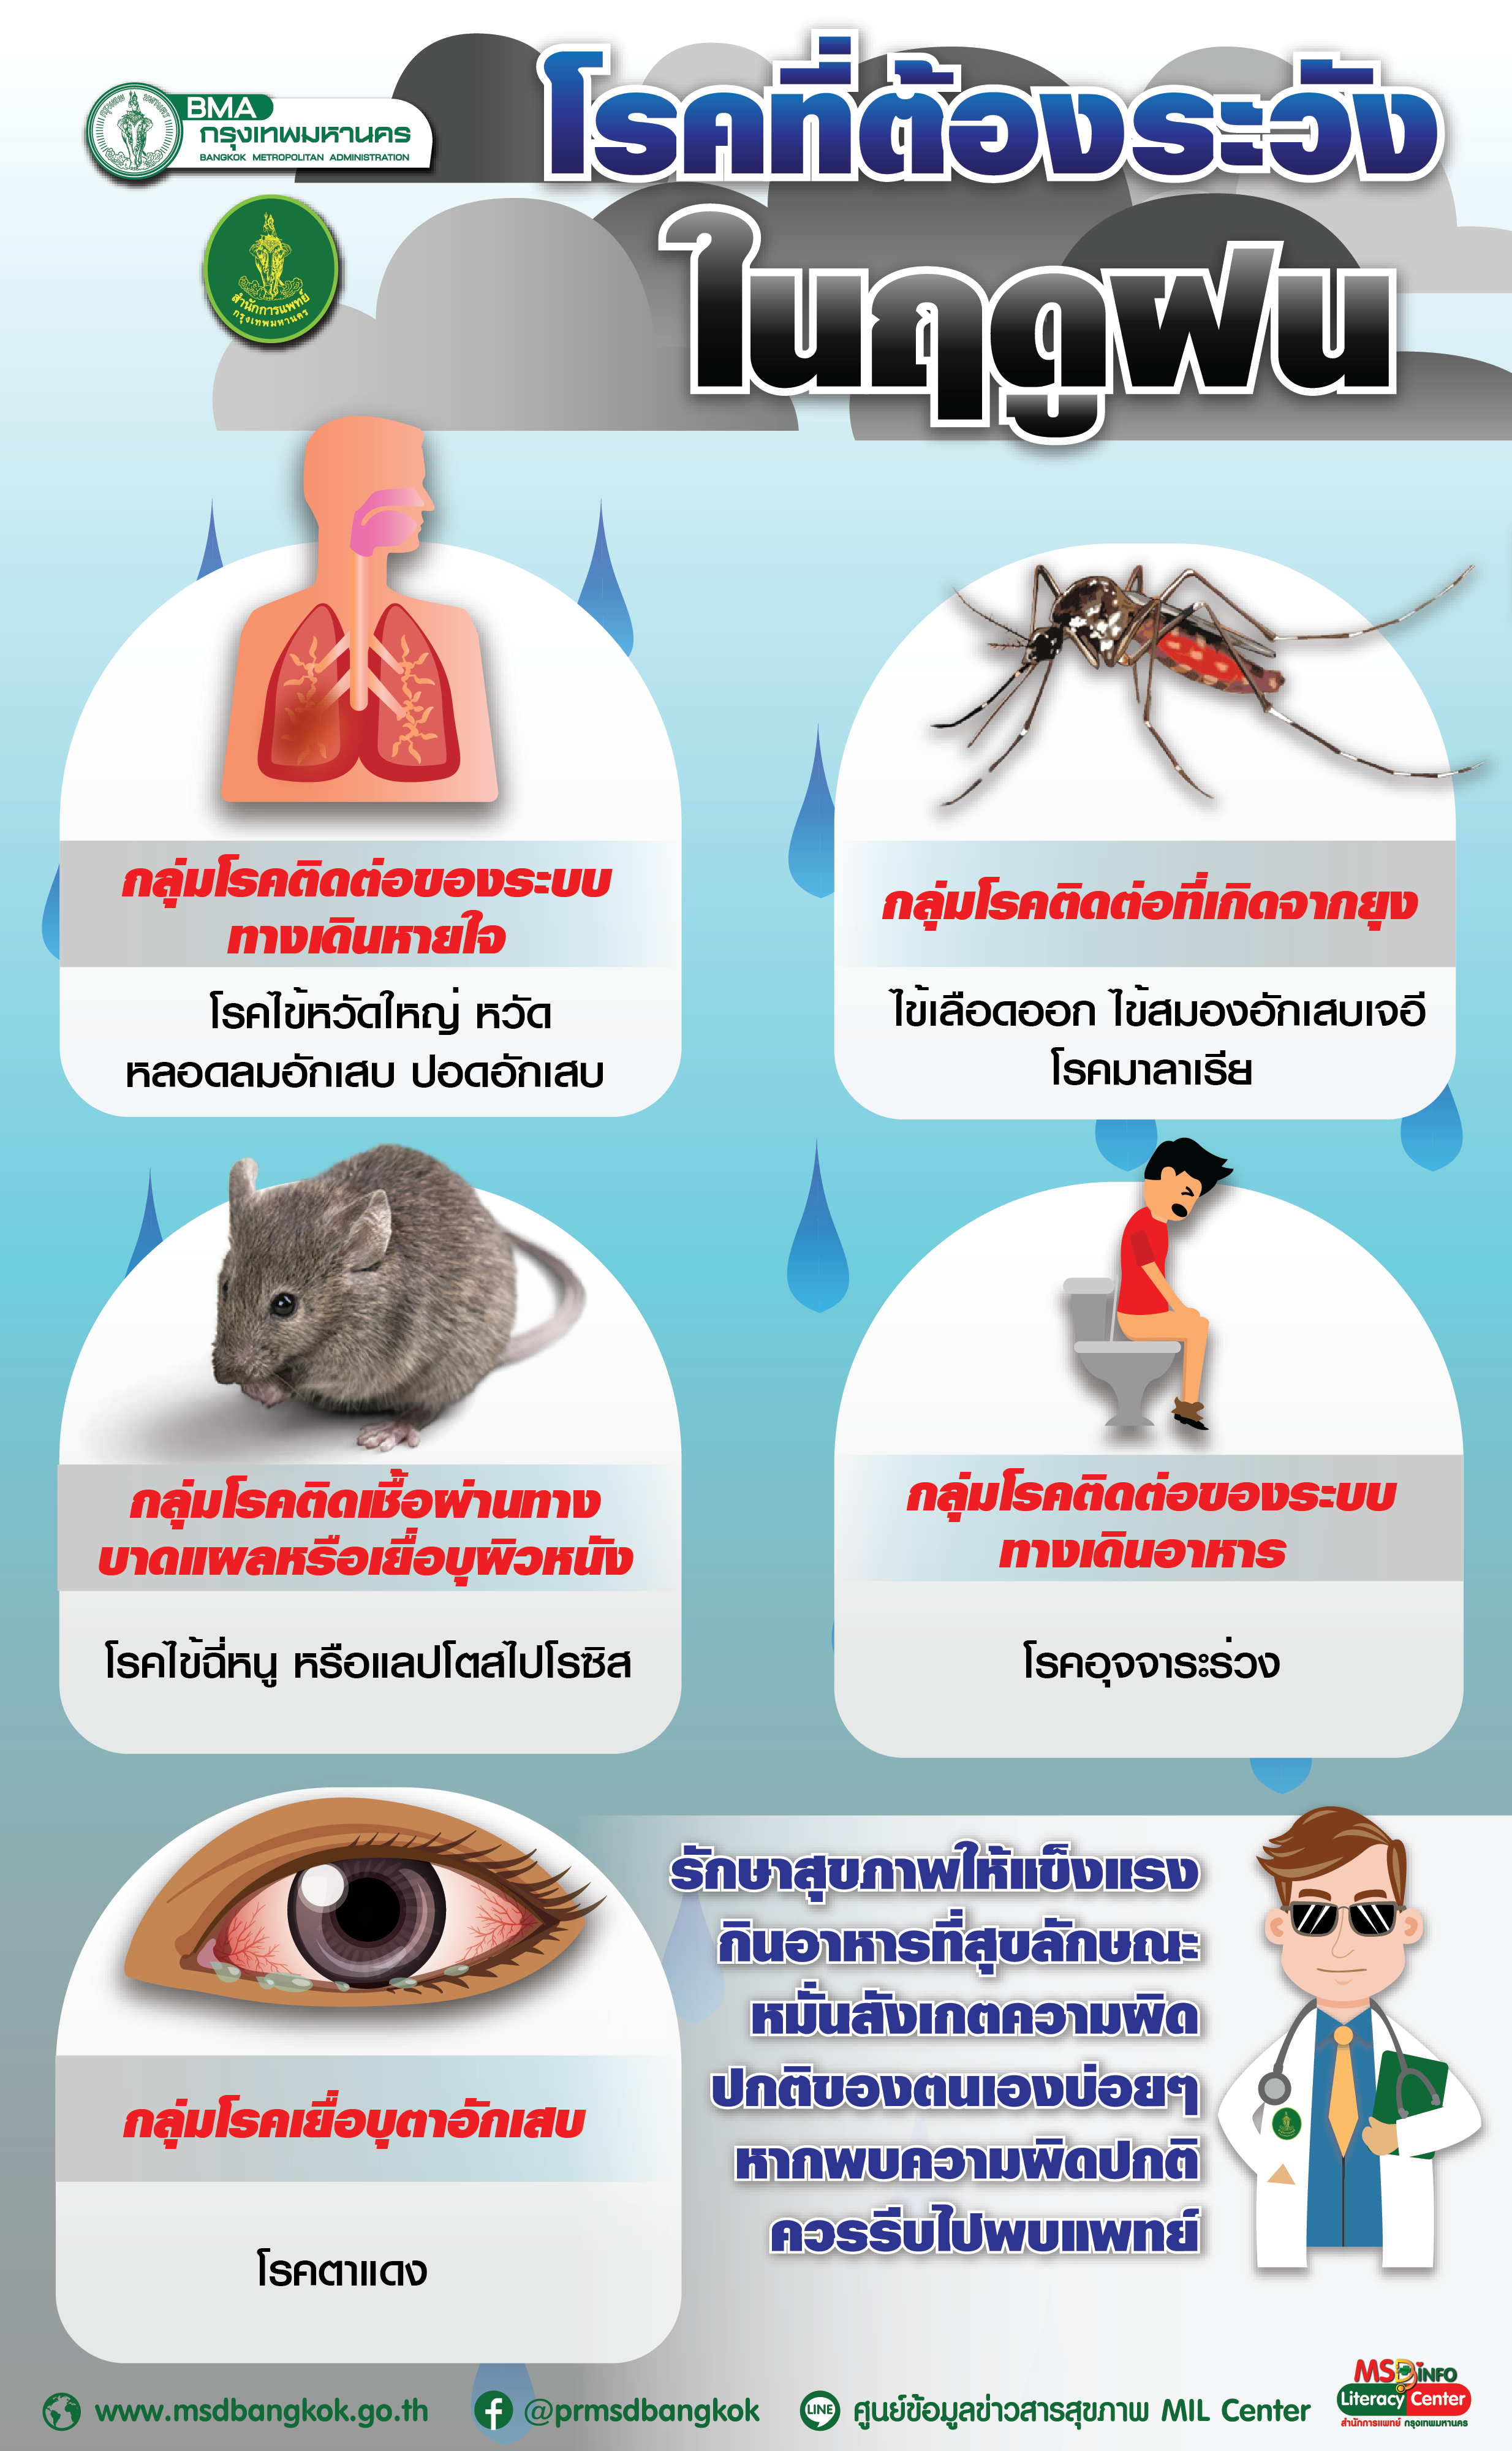 โรคที่ต้องระวังในฤดูฝน สำนักการแพทย์ กรุงเทพมหานคร 3043